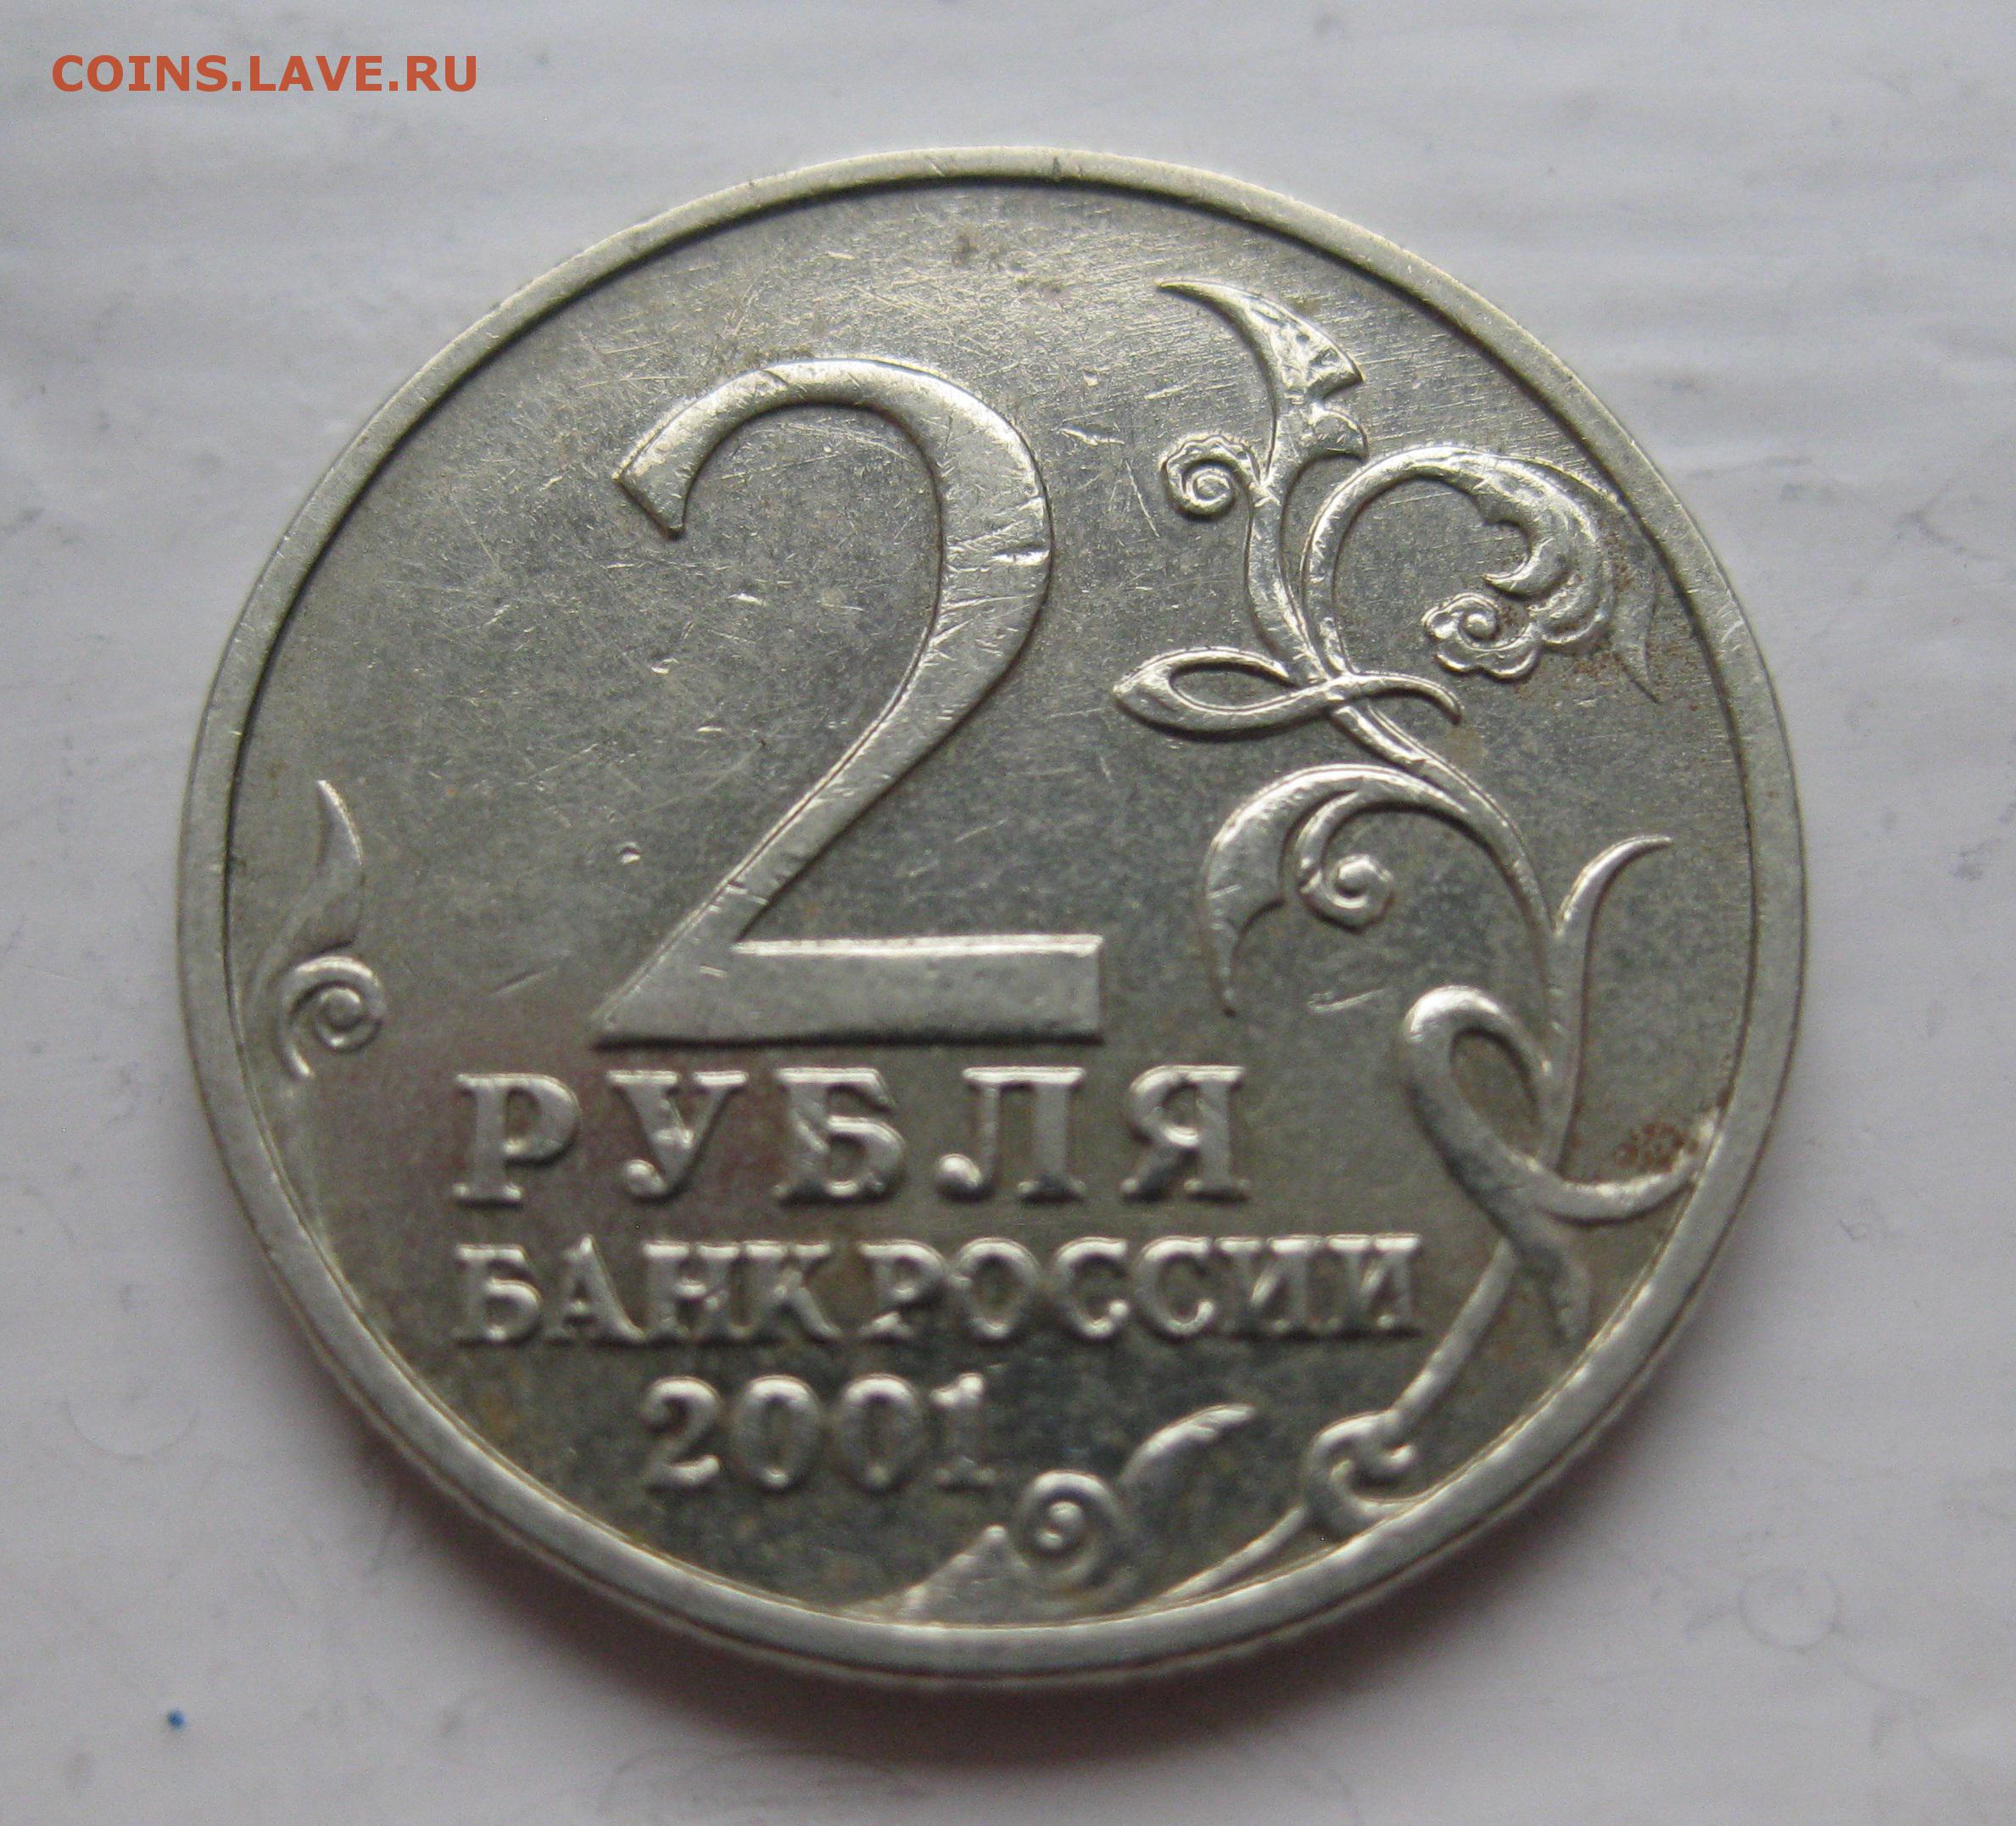 Цена монеты 2 рубля 2000 года. 2 Рубля Гагарин 2001 без знака монетного. 2 Рубля 2001 года. Монета без знака монетного двора. 2 Рубля юбилейные.